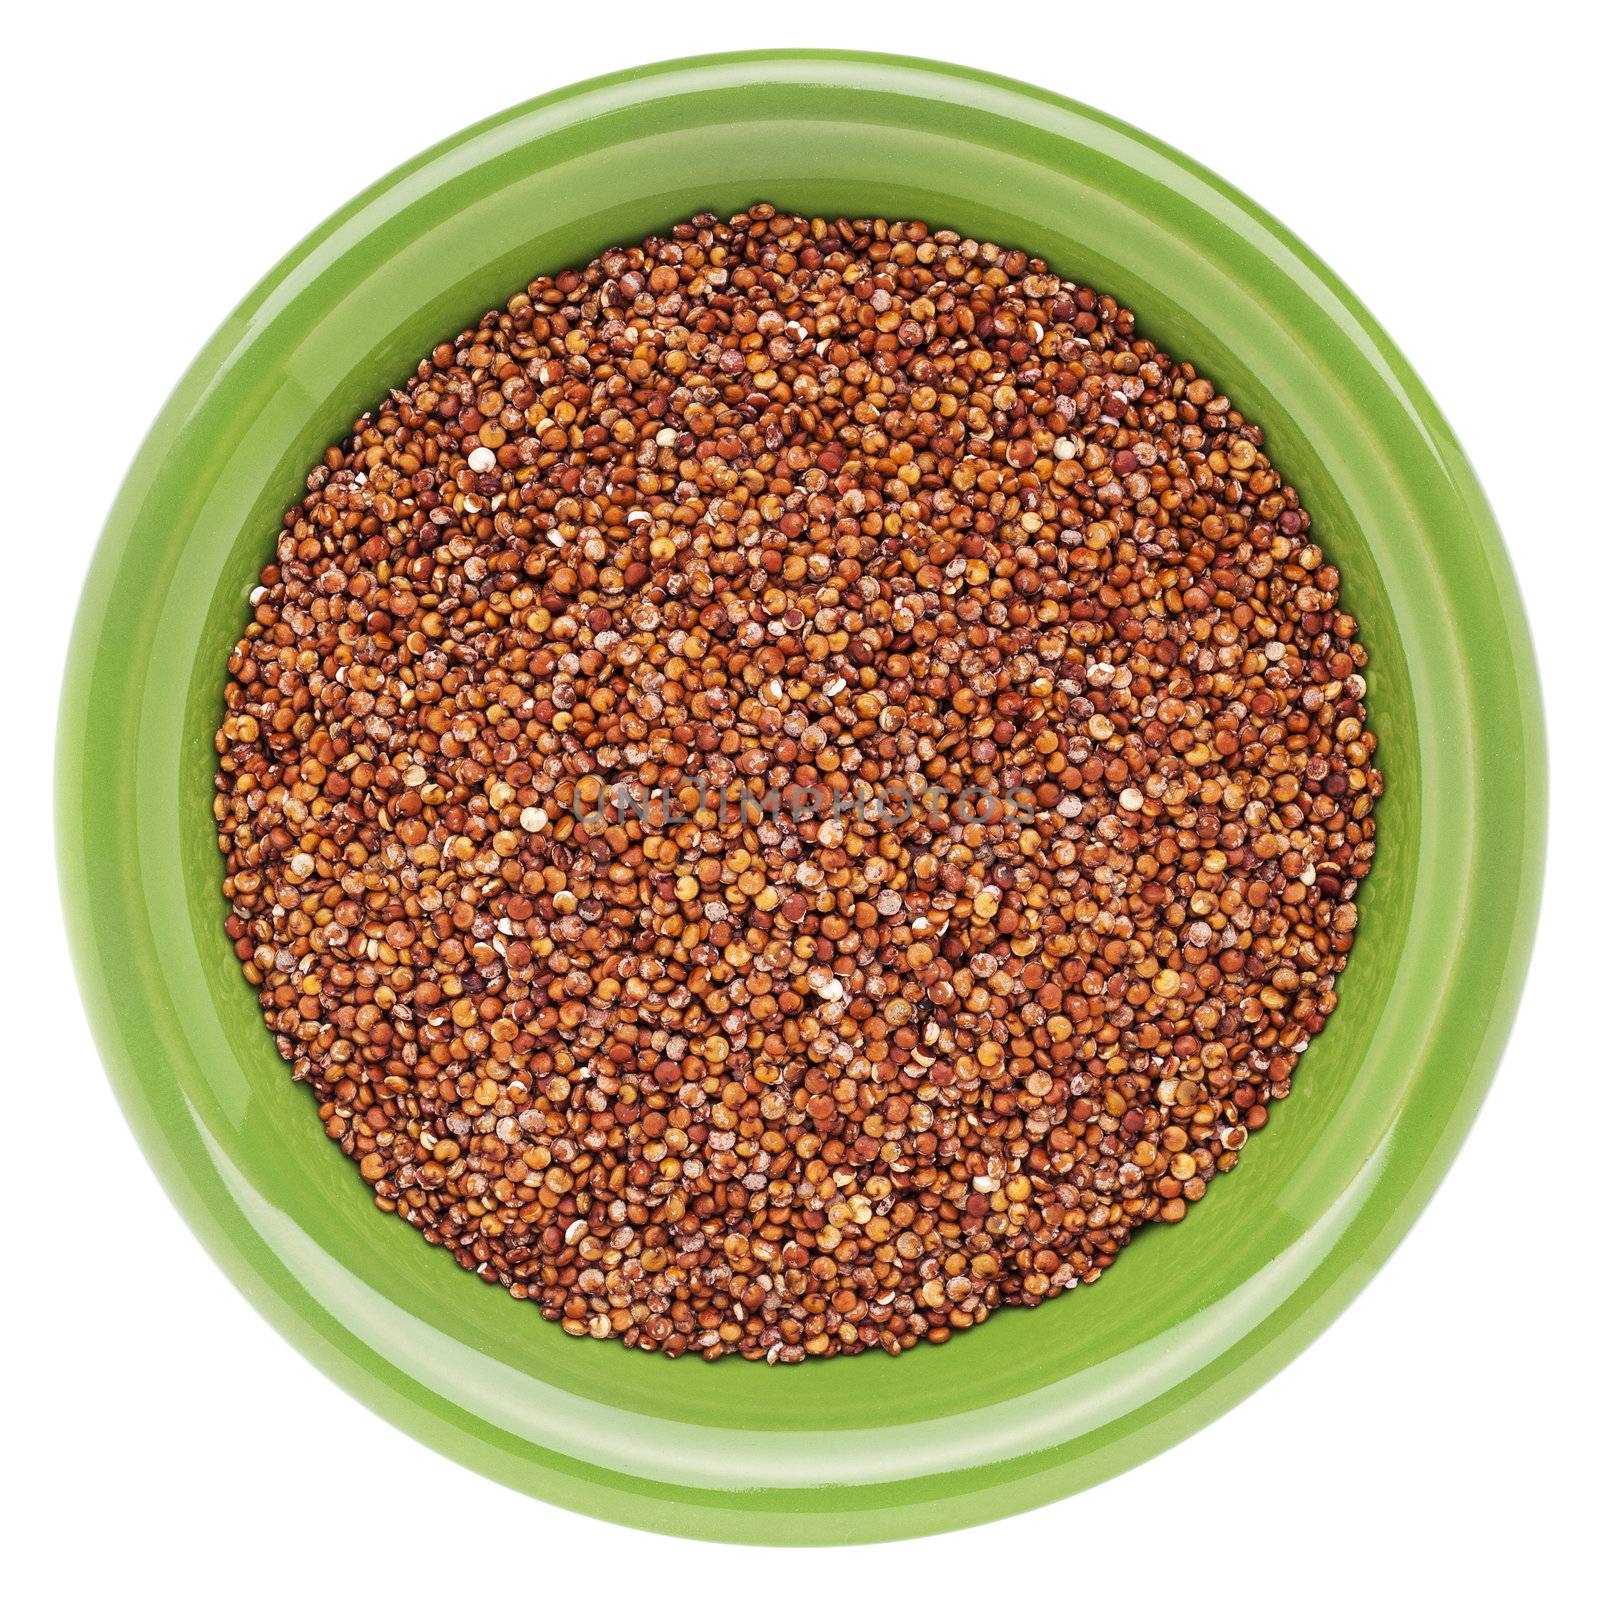 red quinoa grain by PixelsAway